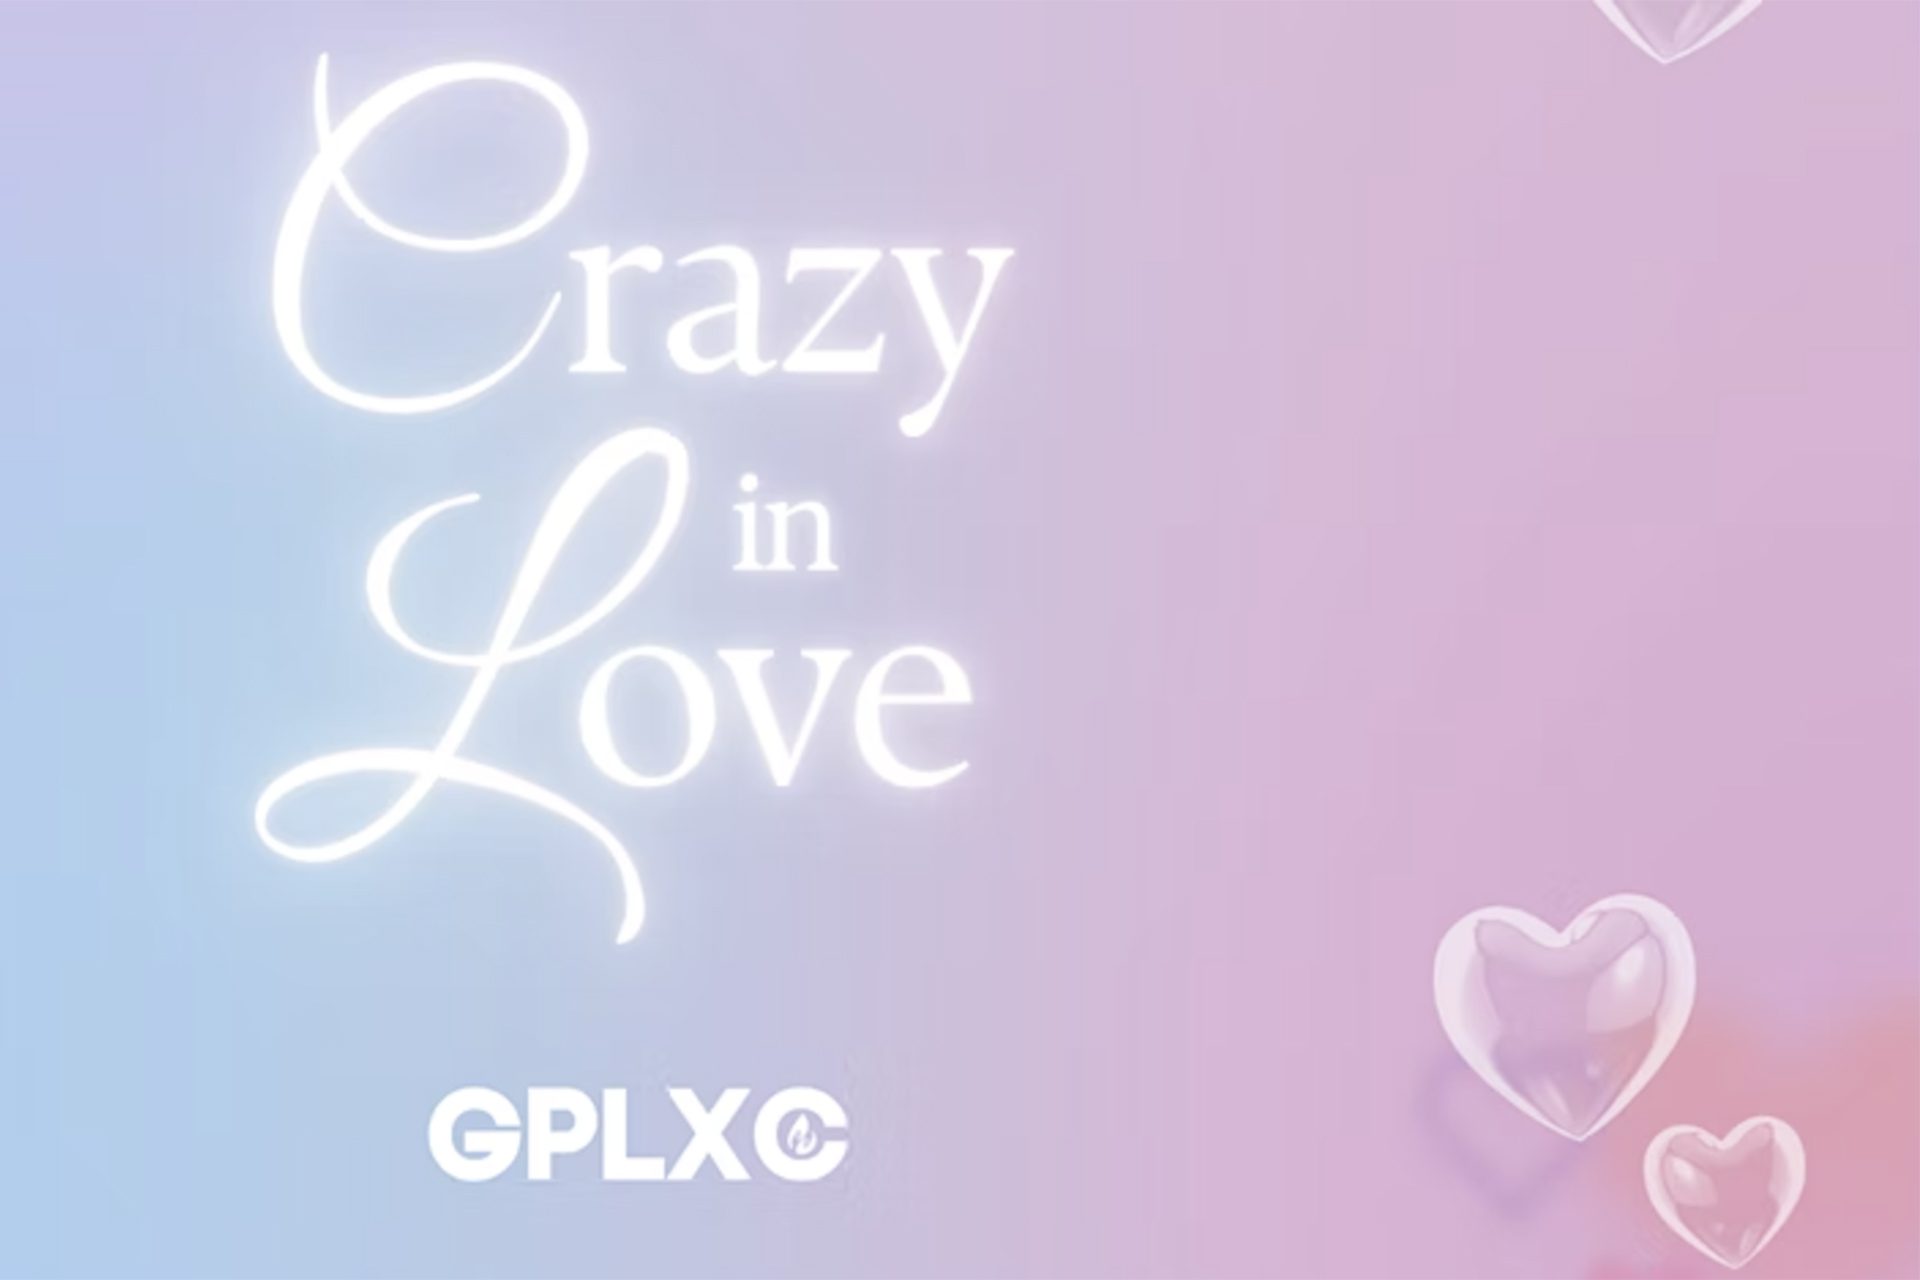 Las palabras &quot;Crazy in Love&quot; y &quot;GPLXC&quot; sobre un fondo azul y rosa con corazones.